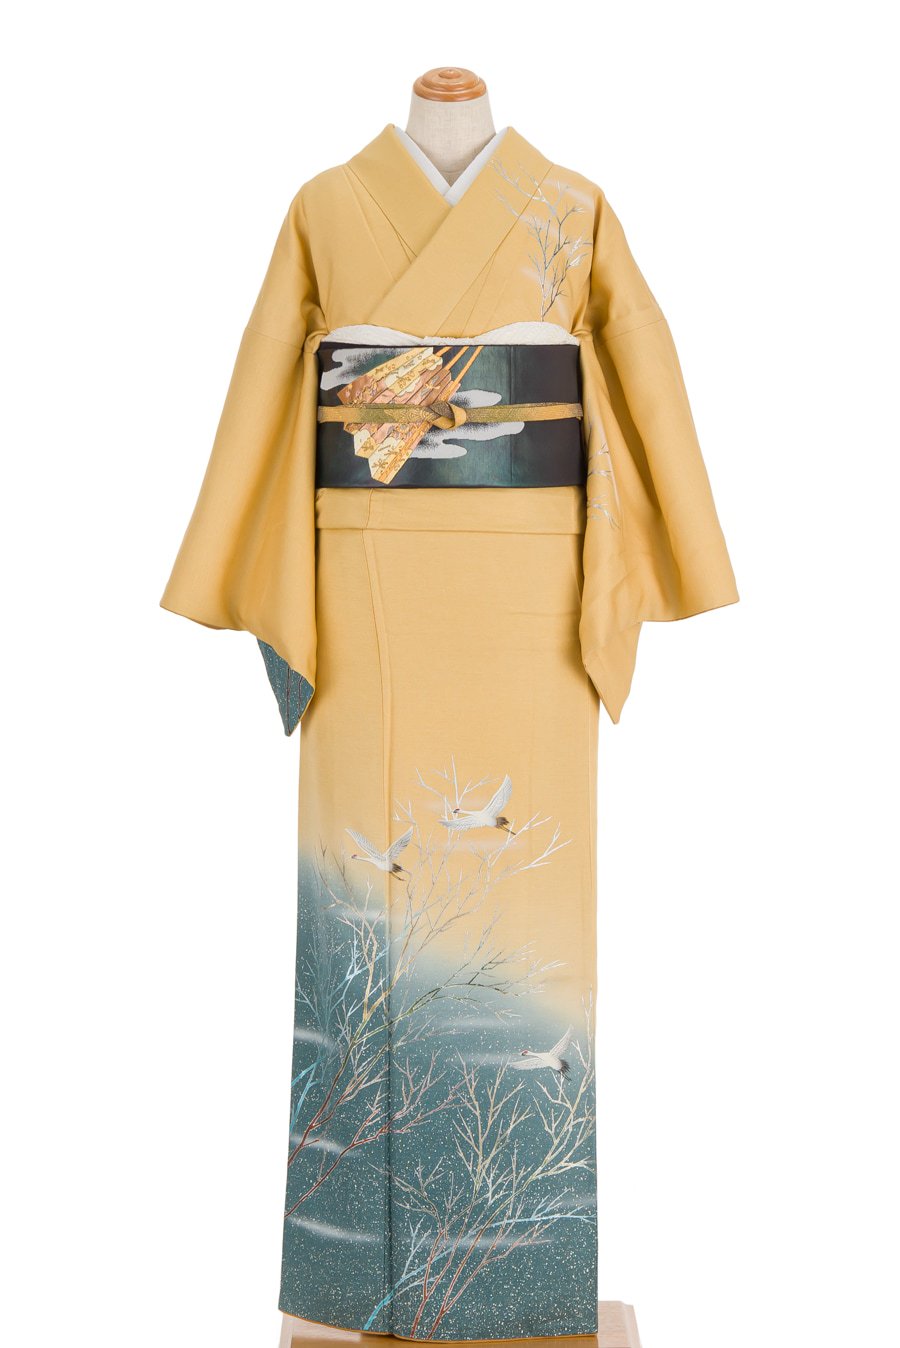 付け下げ訪問着 冬景色 鶴と雪 - からん::アンティーク着物・リサイクル着物の通販サイト